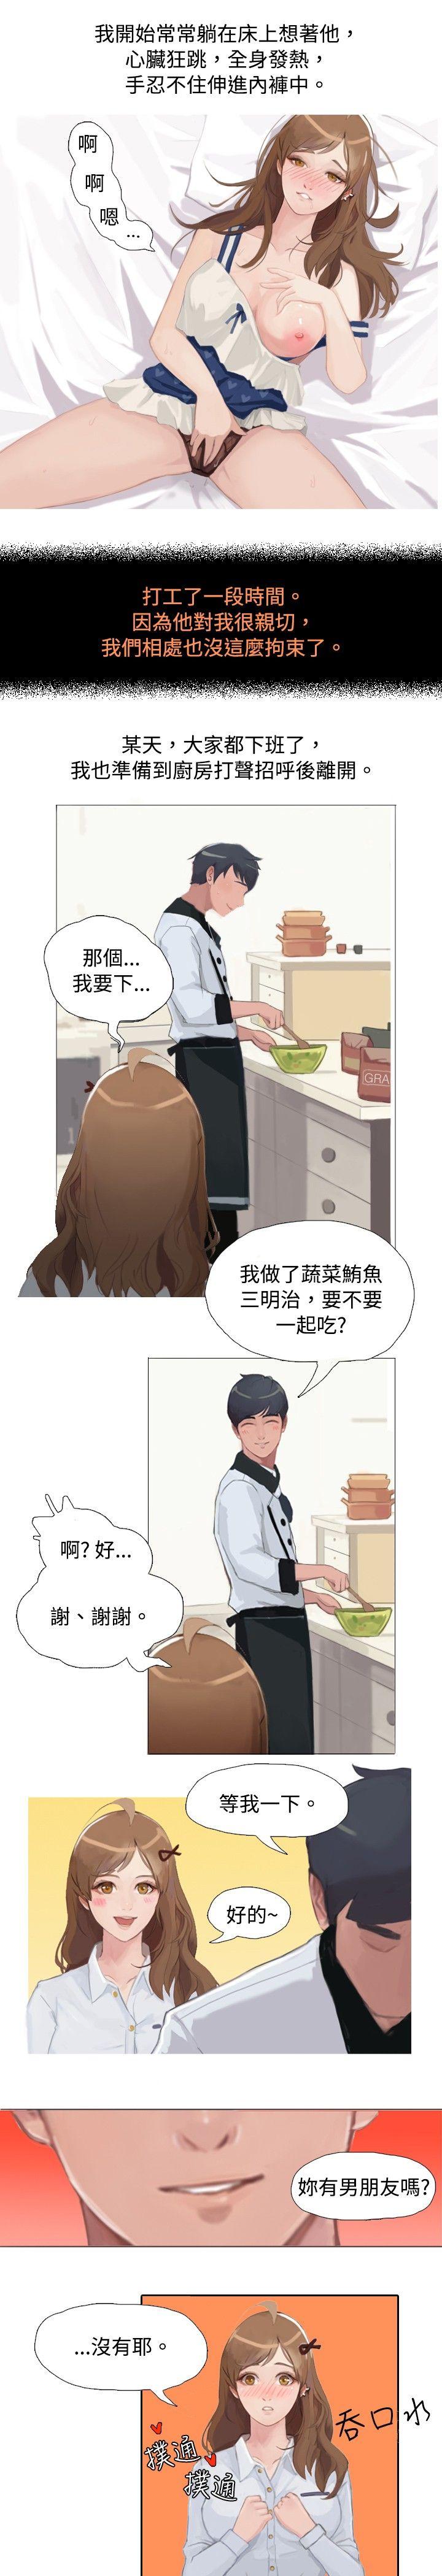 韩国污漫画 秘密Story 与型男主厨的花癡故事(上) 4